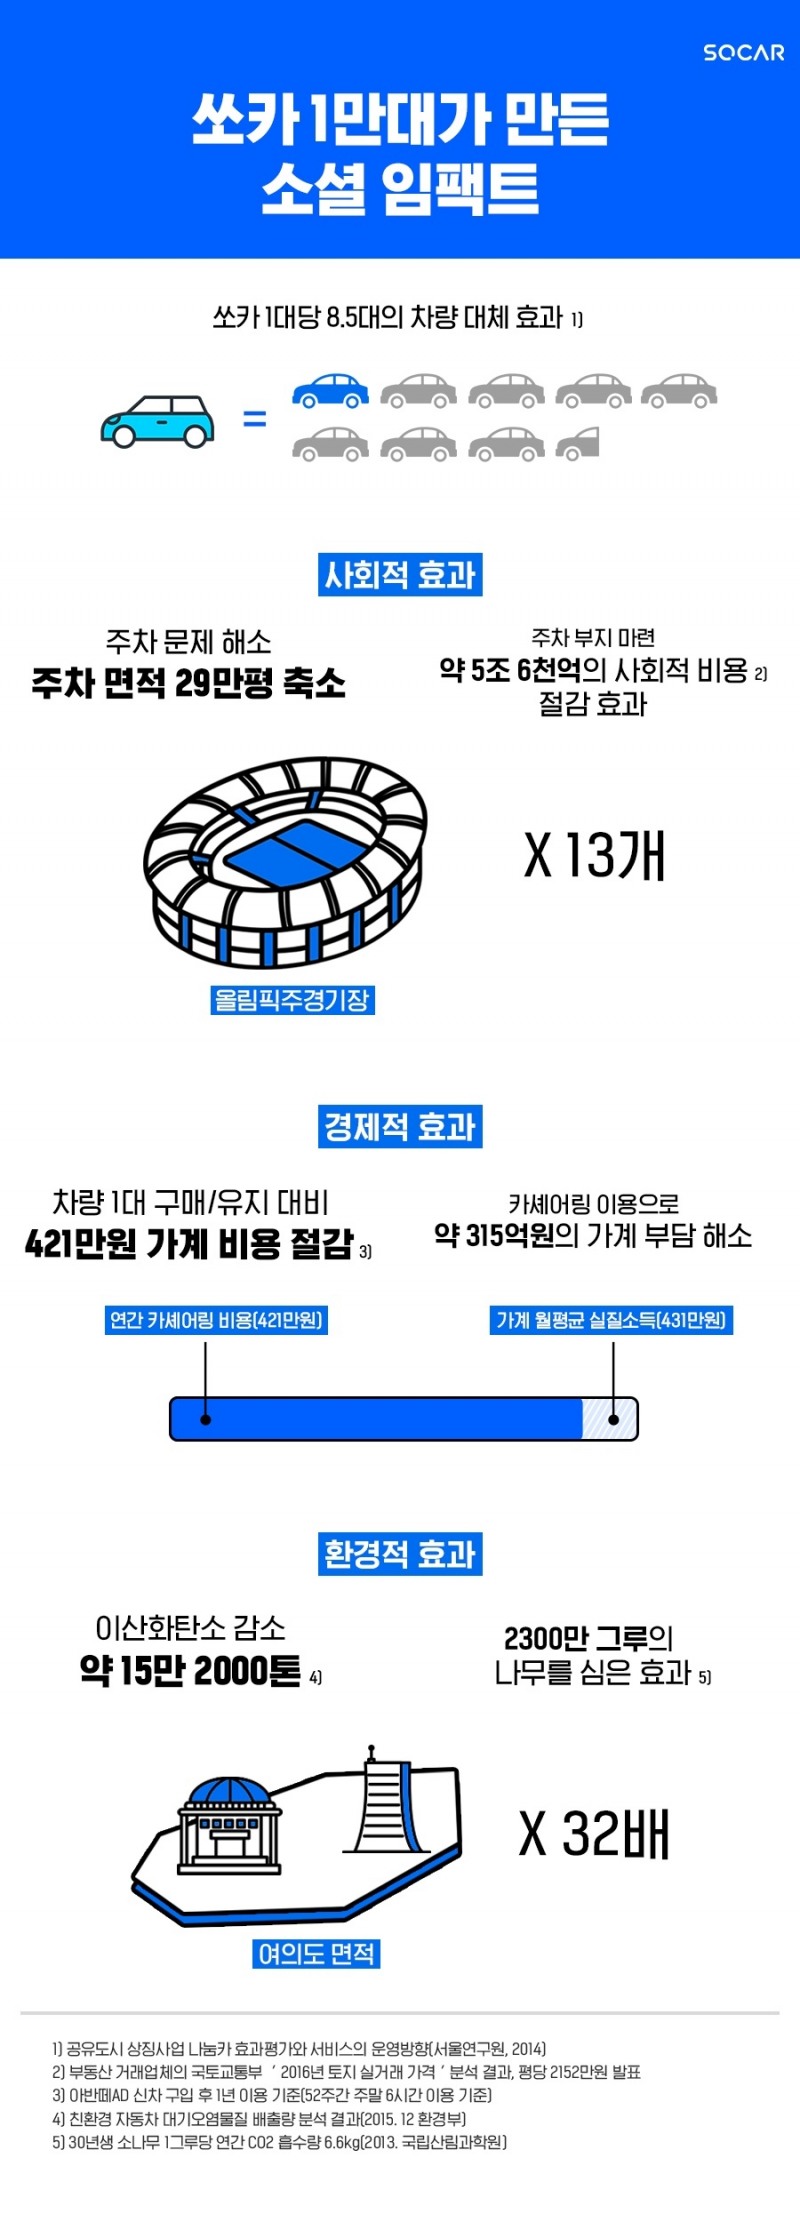 쏘카 1만대가 만든 소셜 임팩트.(사진=쏘카)